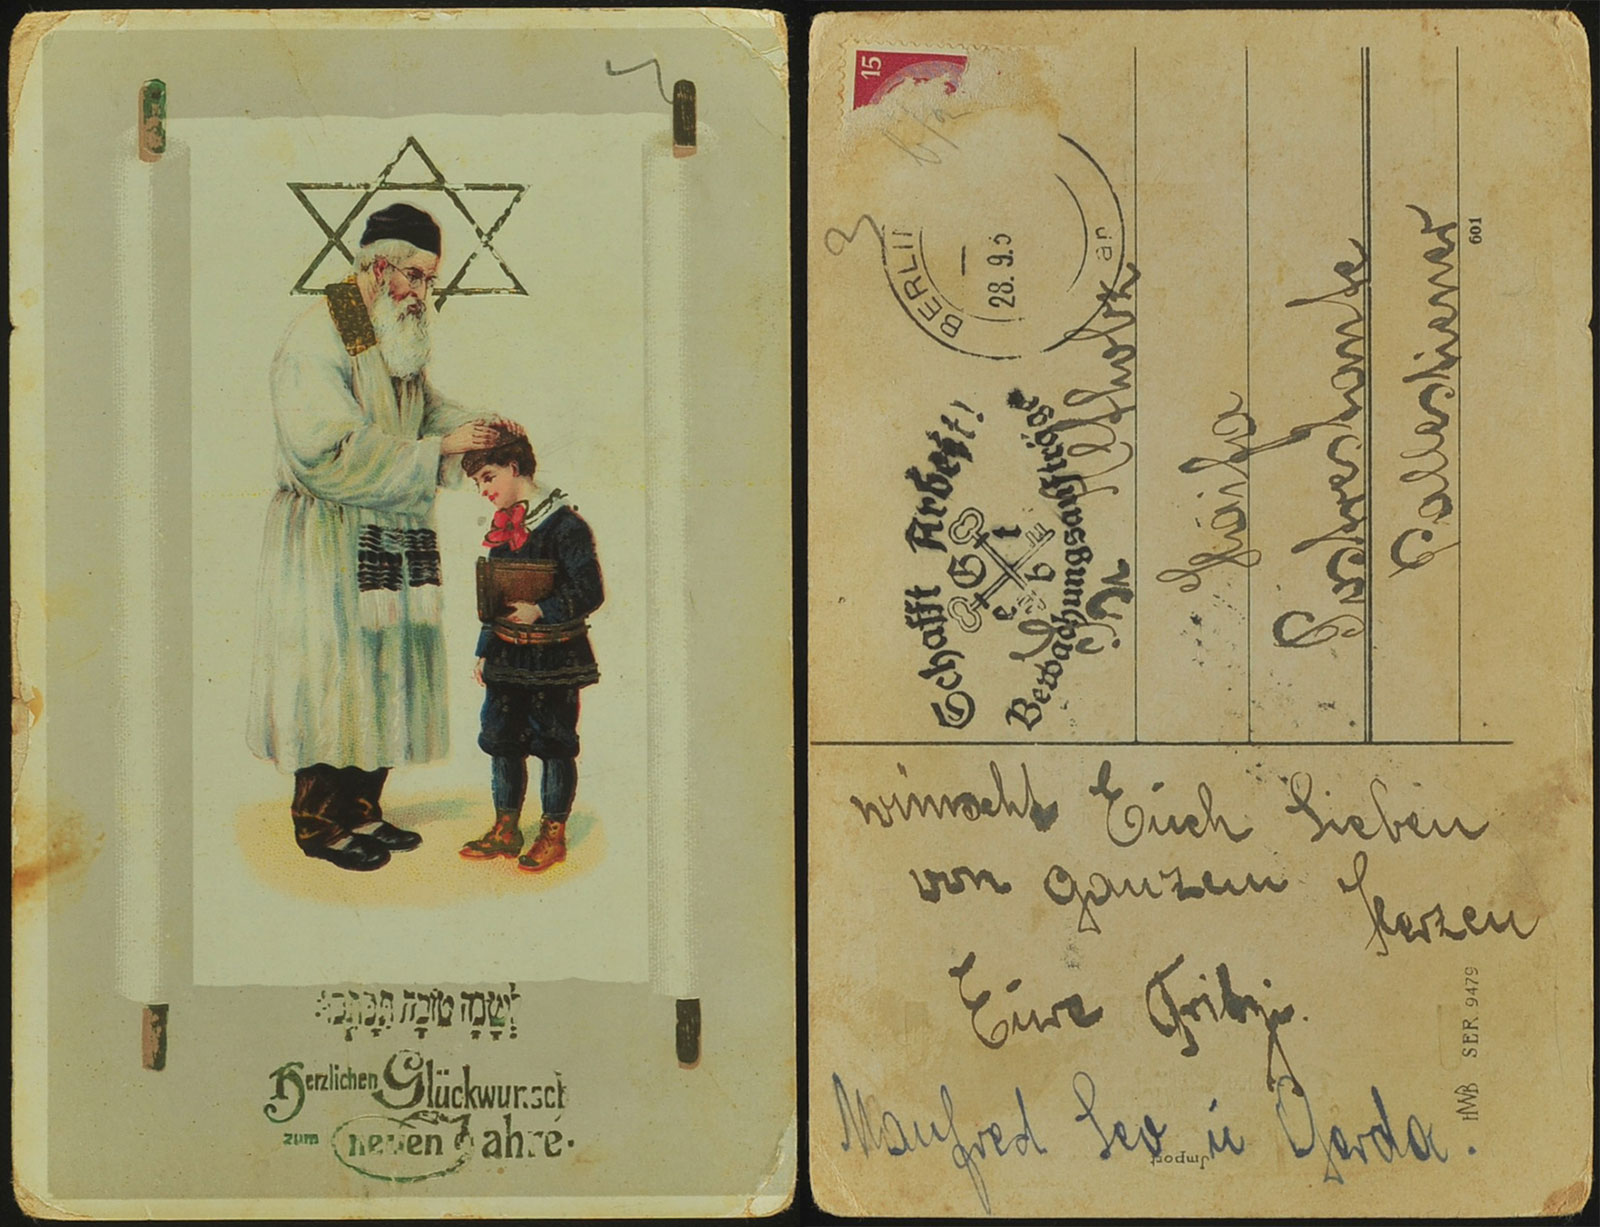 Carte envoyée de Berlin par Manfred (nom de famille inconnu) pour souhaiter « Chana Tova » (une bonne année) à son ami Israel-Isi Altholtz à Haïfa